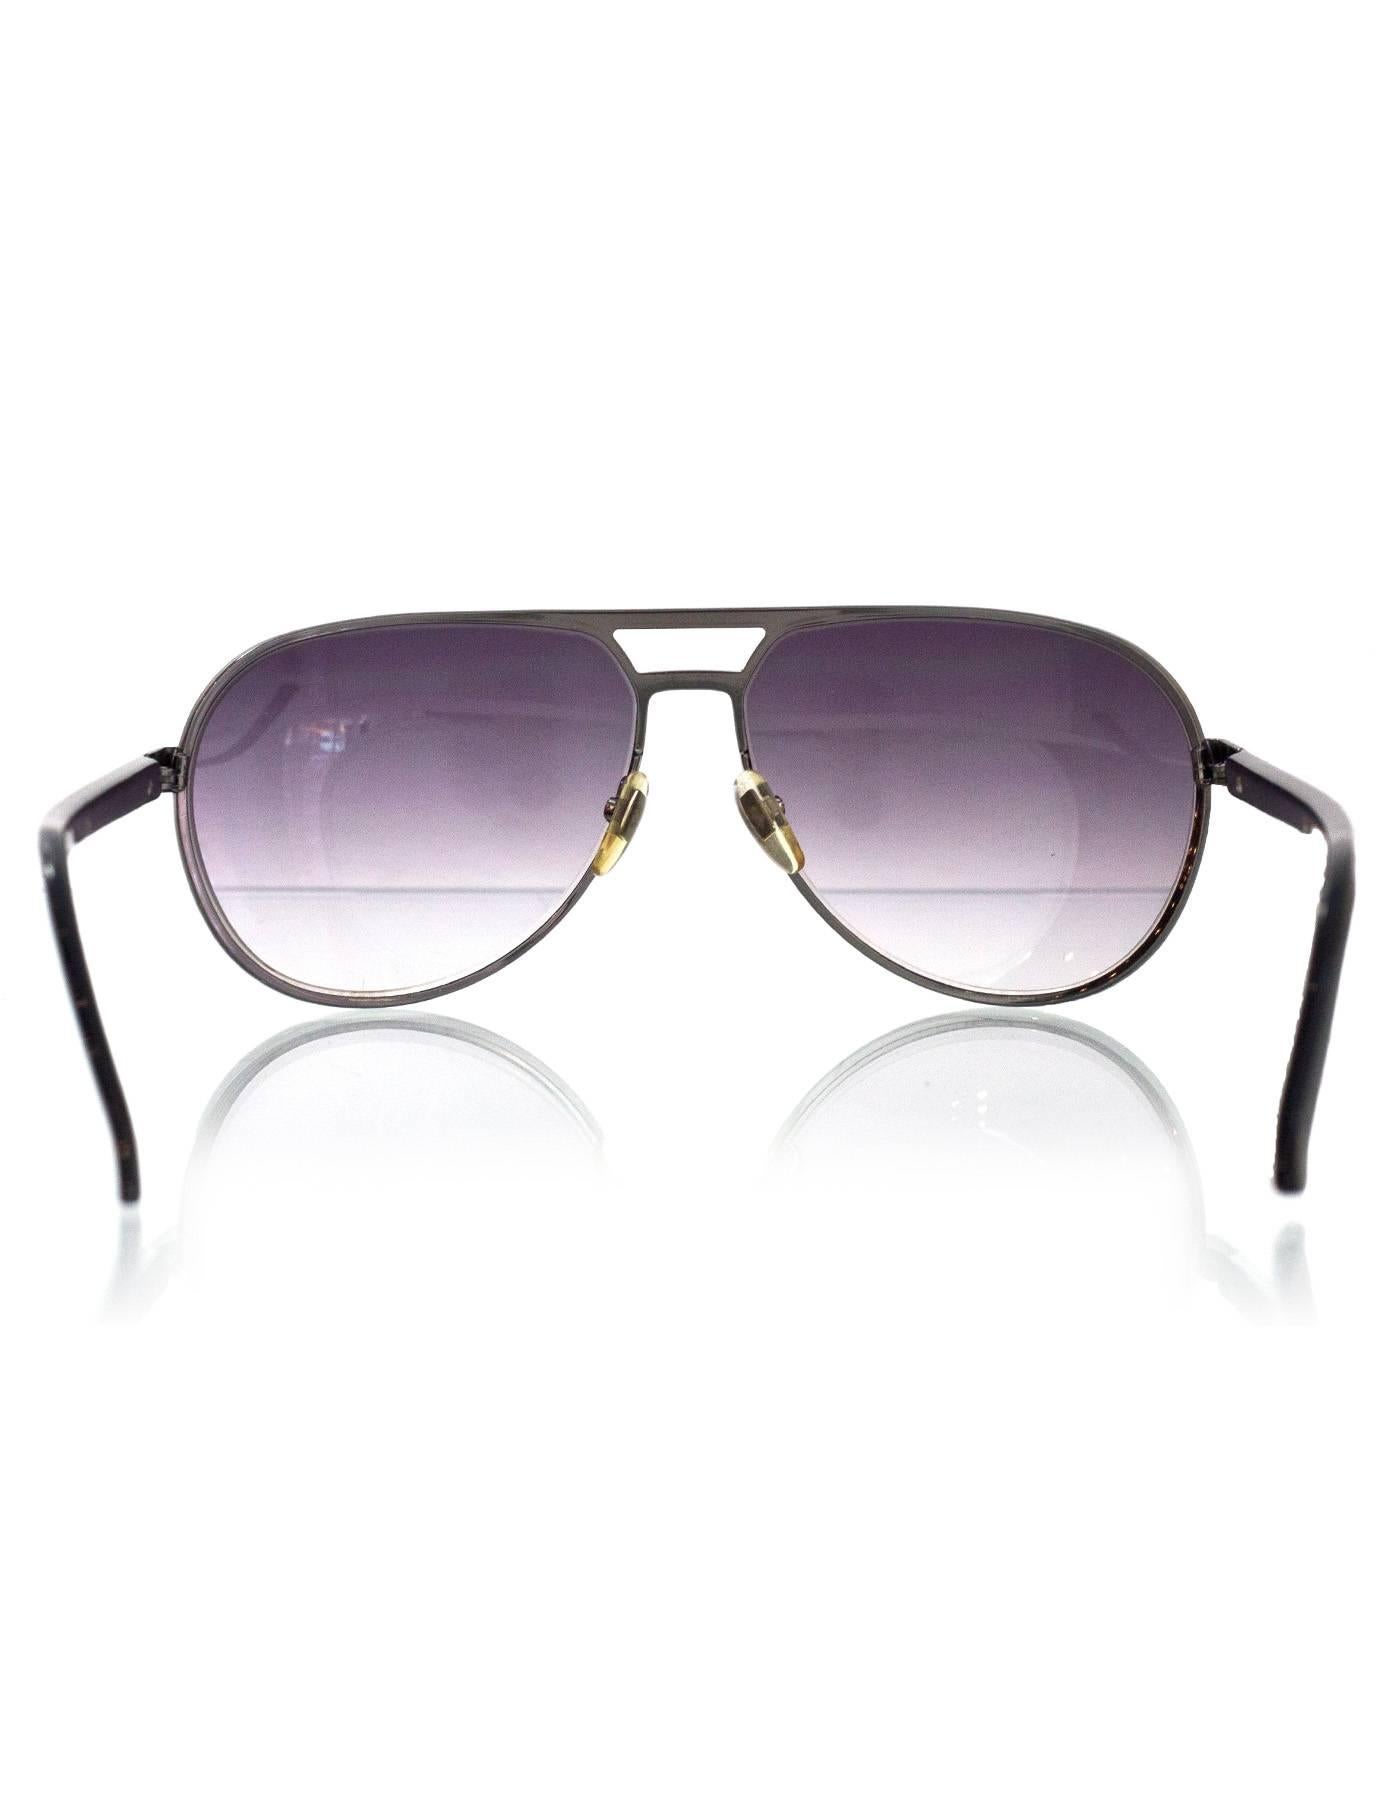 Women's or Men's Gucci Black Aviator Sunglasses